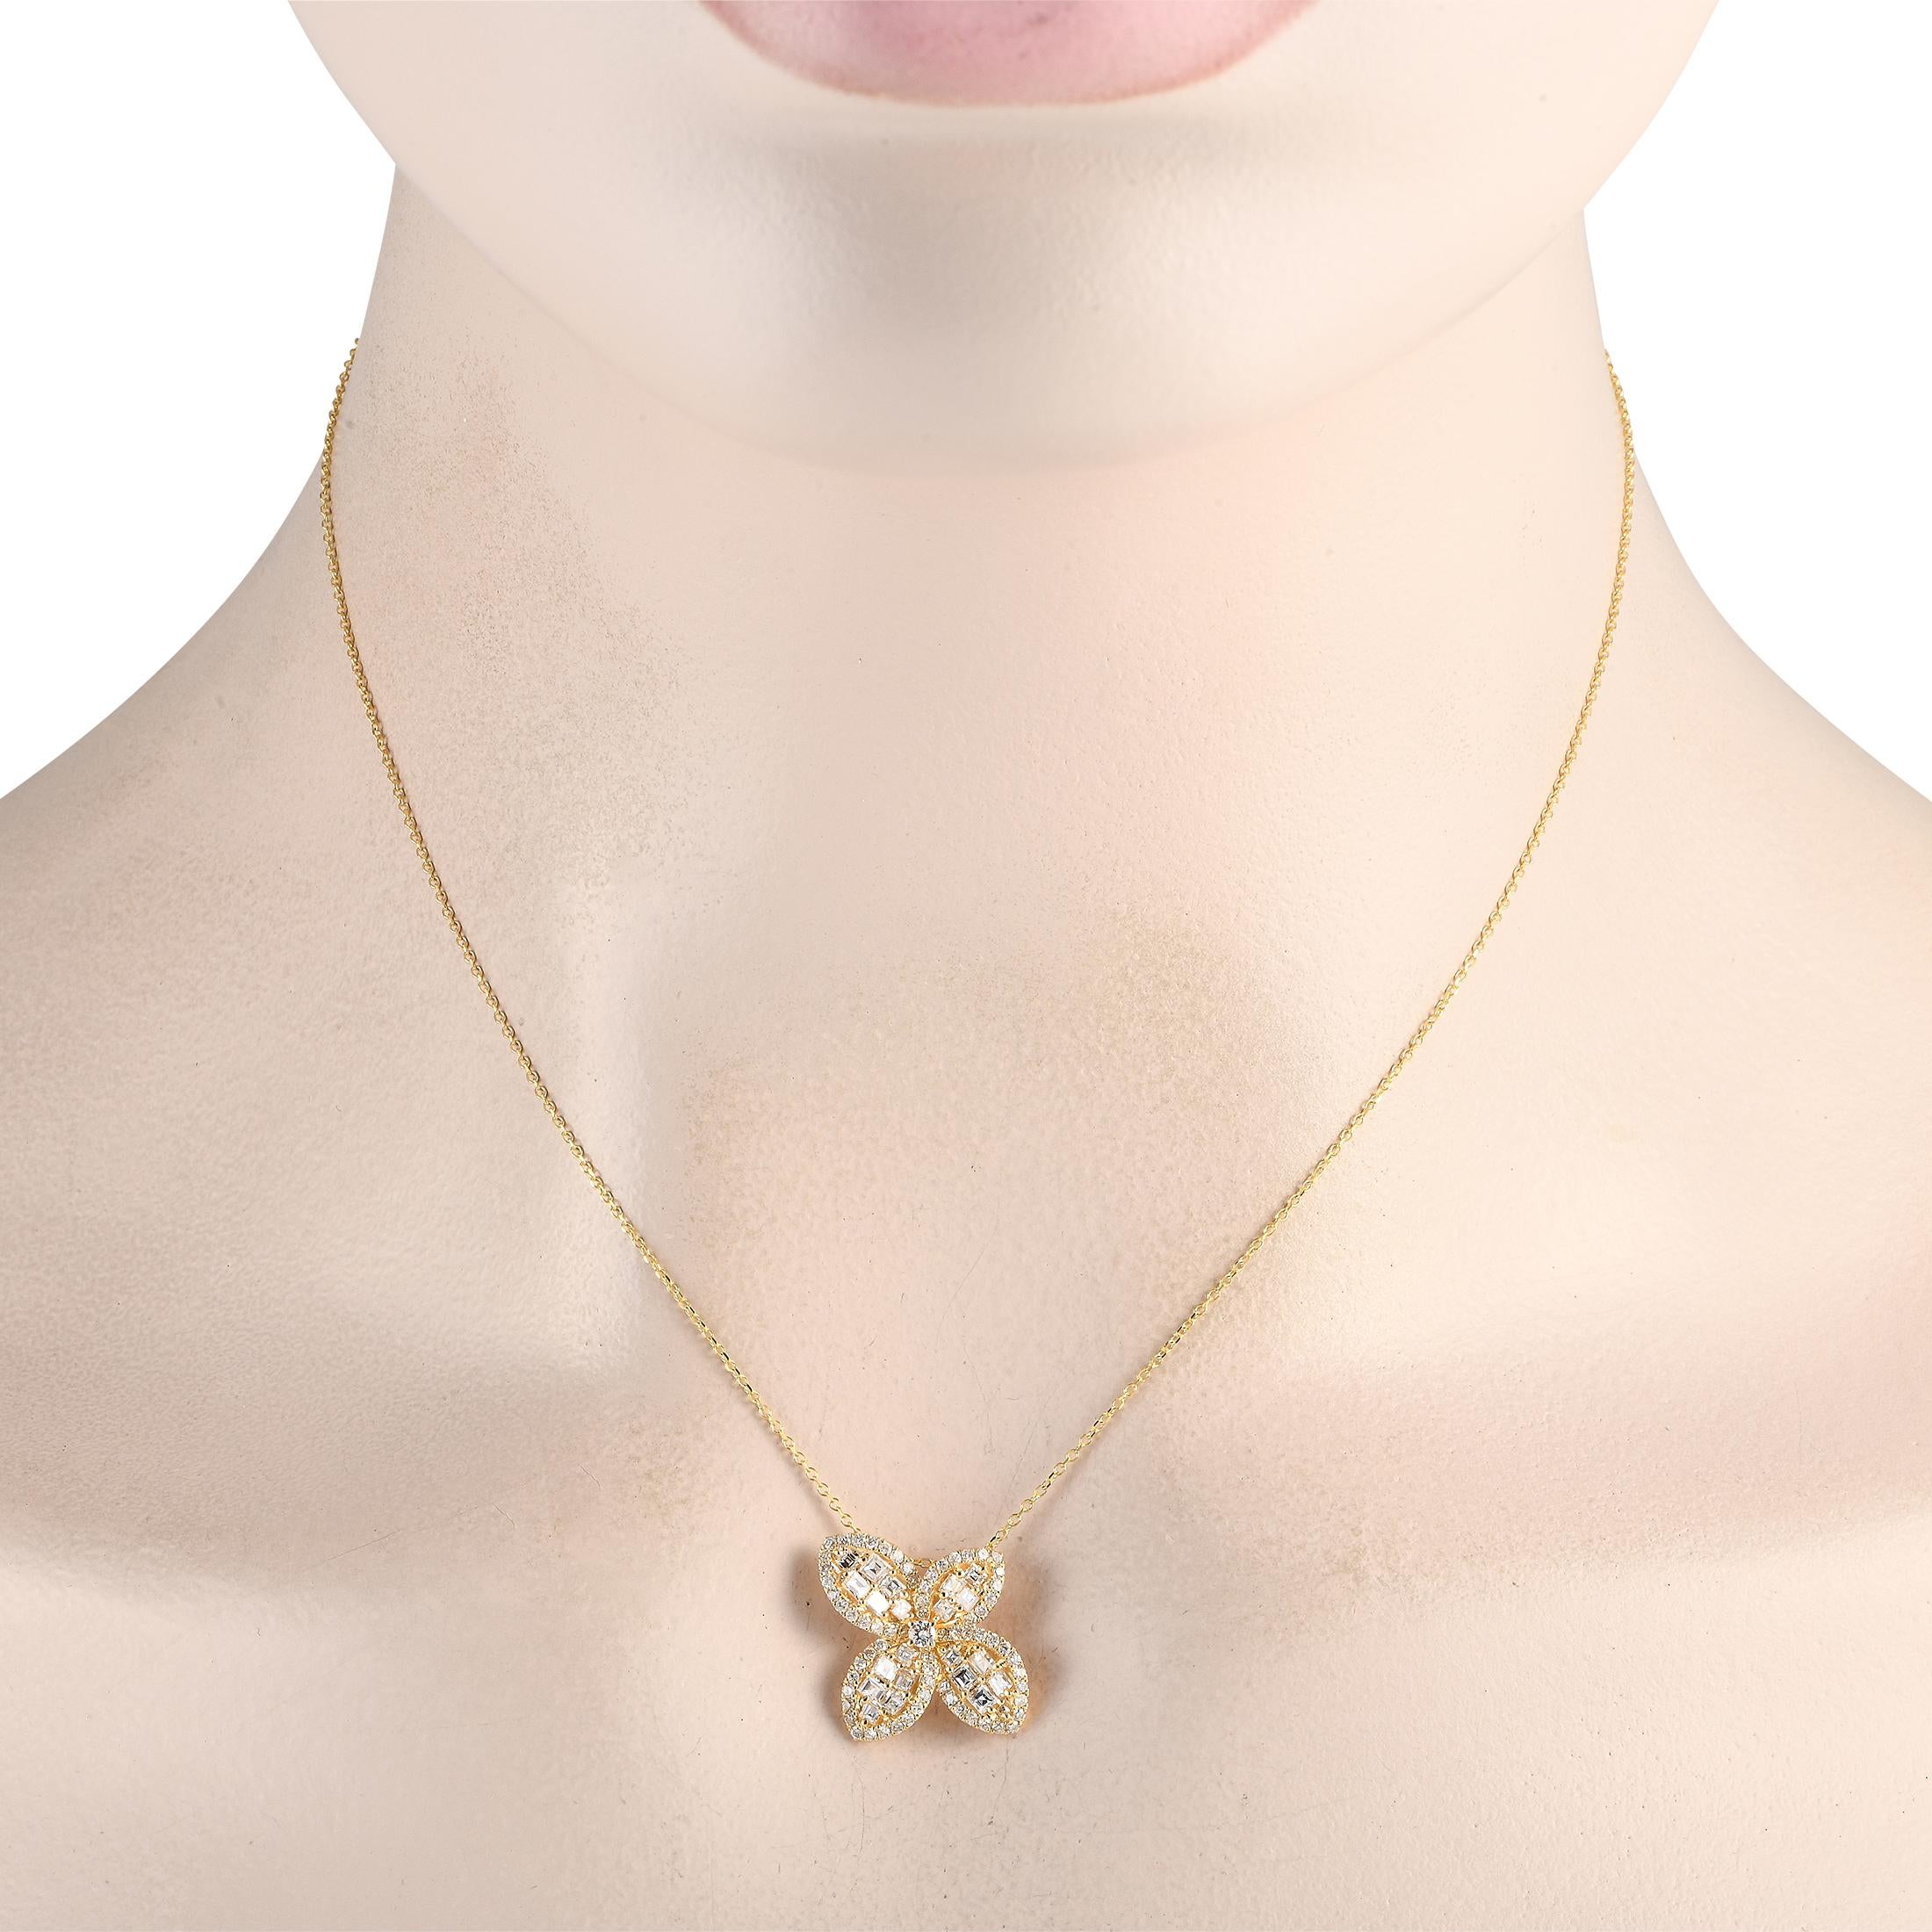 Ein abstrakter Blumenanhänger verleiht dieser eleganten Halskette aus 18 Karat Gelbgold einen Hauch von Kunst. Der aus 18 Karat Gelbgold gefertigte Anhänger ist 0,65 cm groß und hängt an einer schlanken 16er Kette. Diamanten im Asscher-Schliff mit